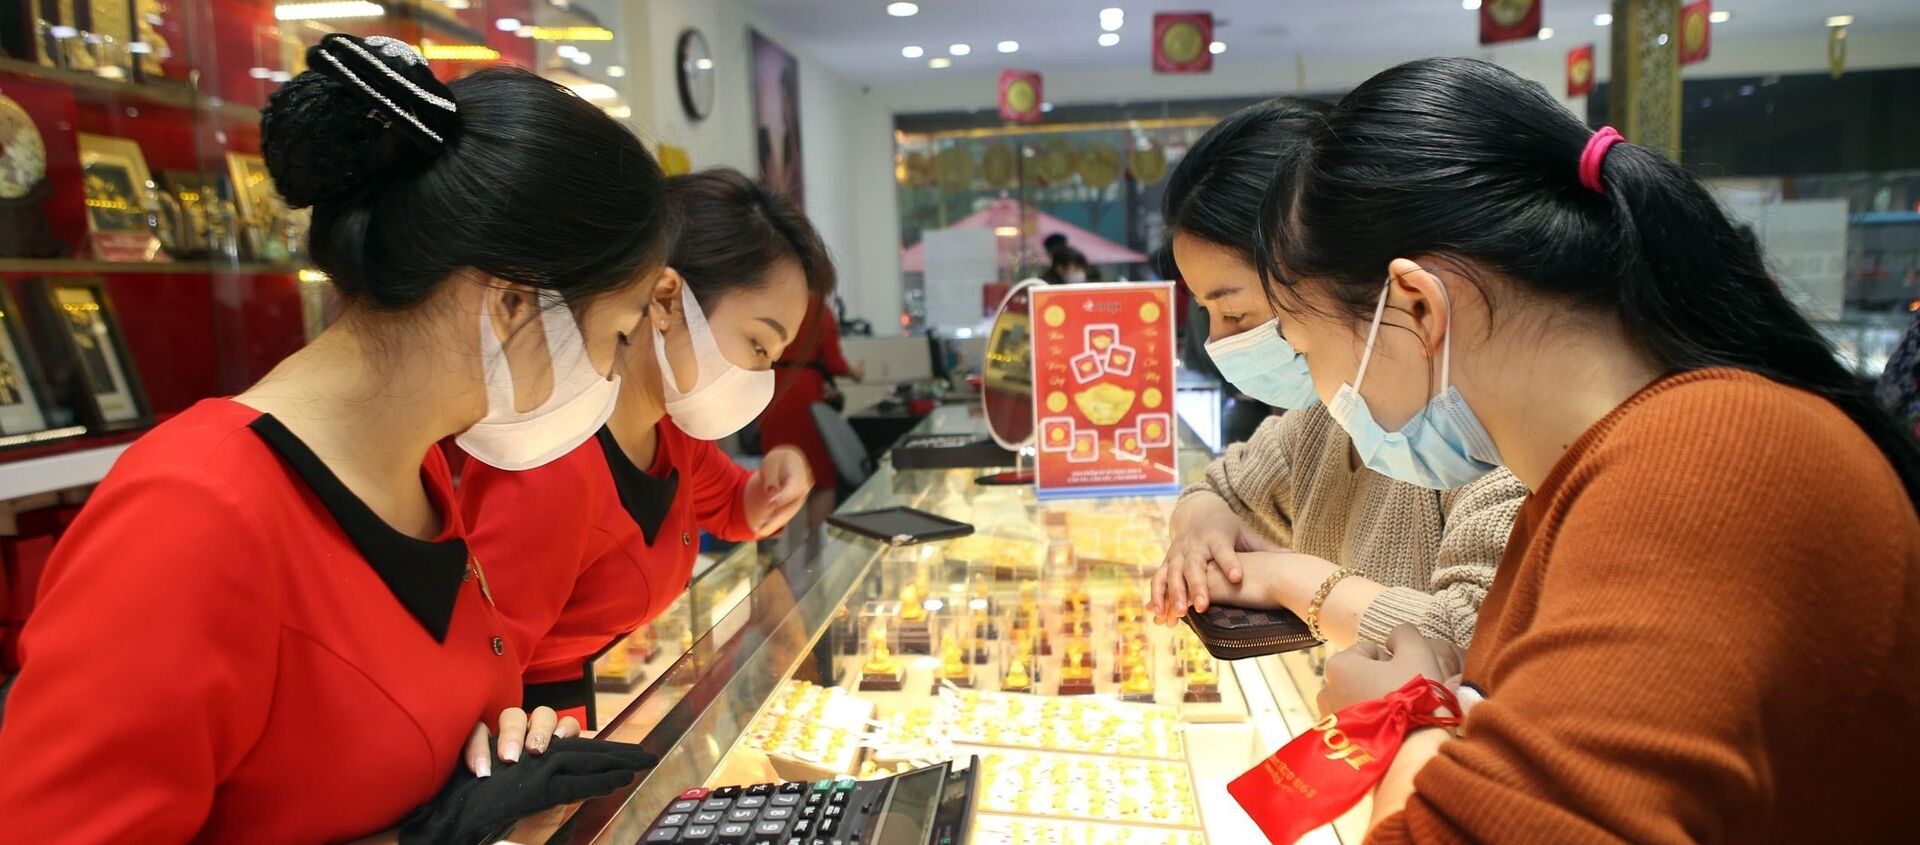 Người dân và nhân viên đều đeo khẩu trang trong khi giao dịch tại Trung tâm vàng bạc trang sức DOJI, số 209 Xã Đàn (Hà Nội). - Sputnik Việt Nam, 1920, 03.02.2020